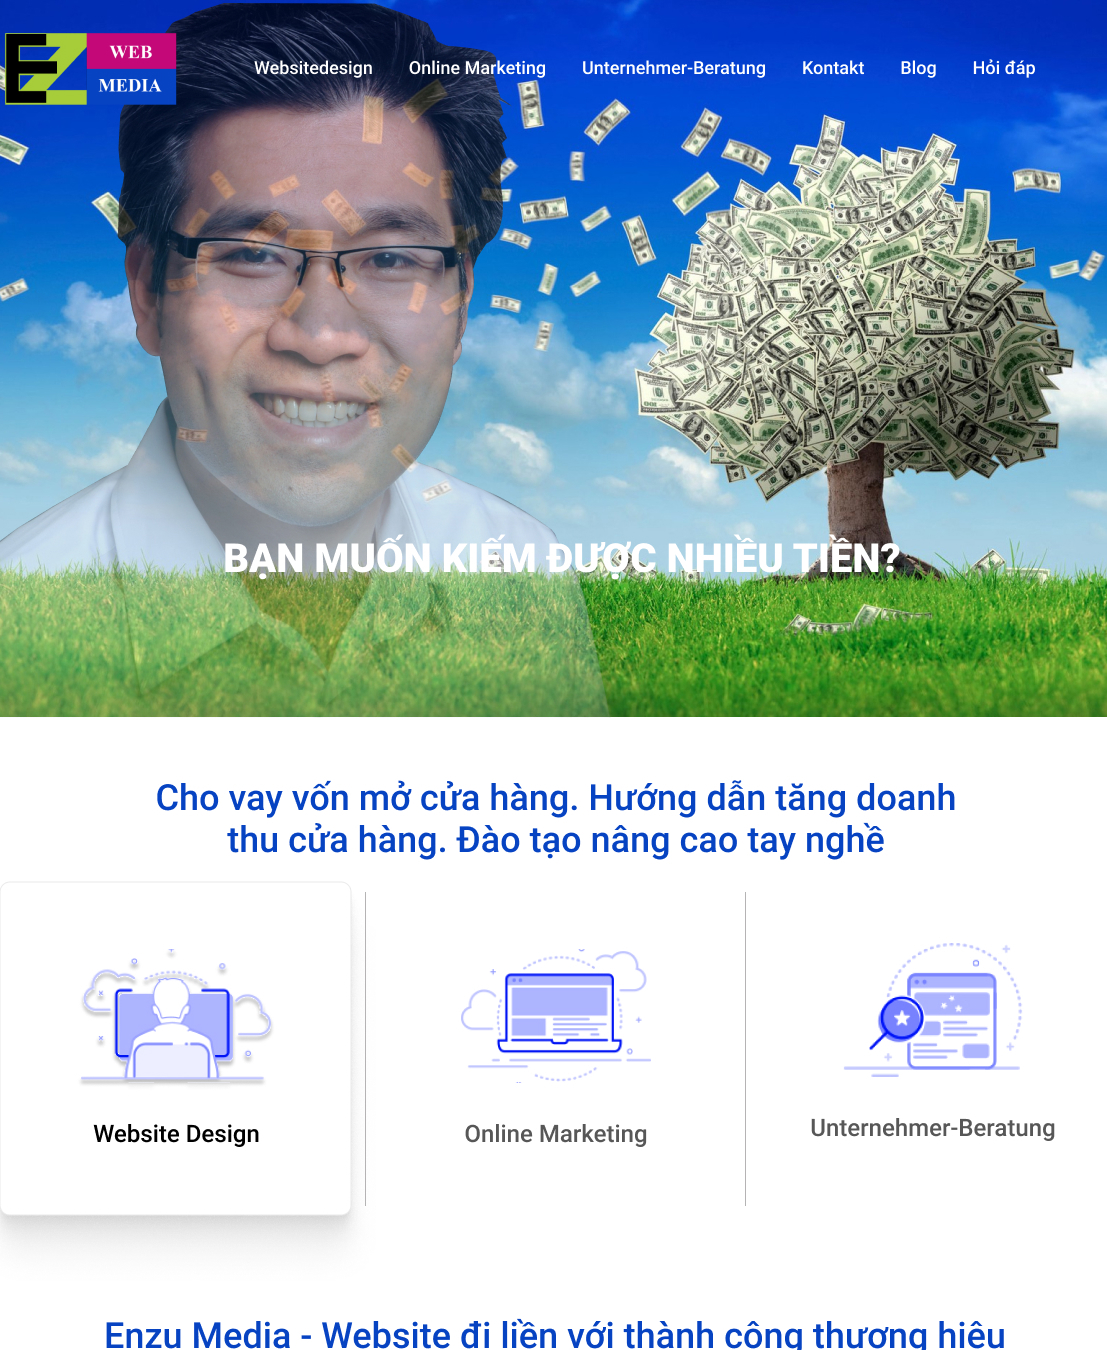 thiết kế website đà nẵng